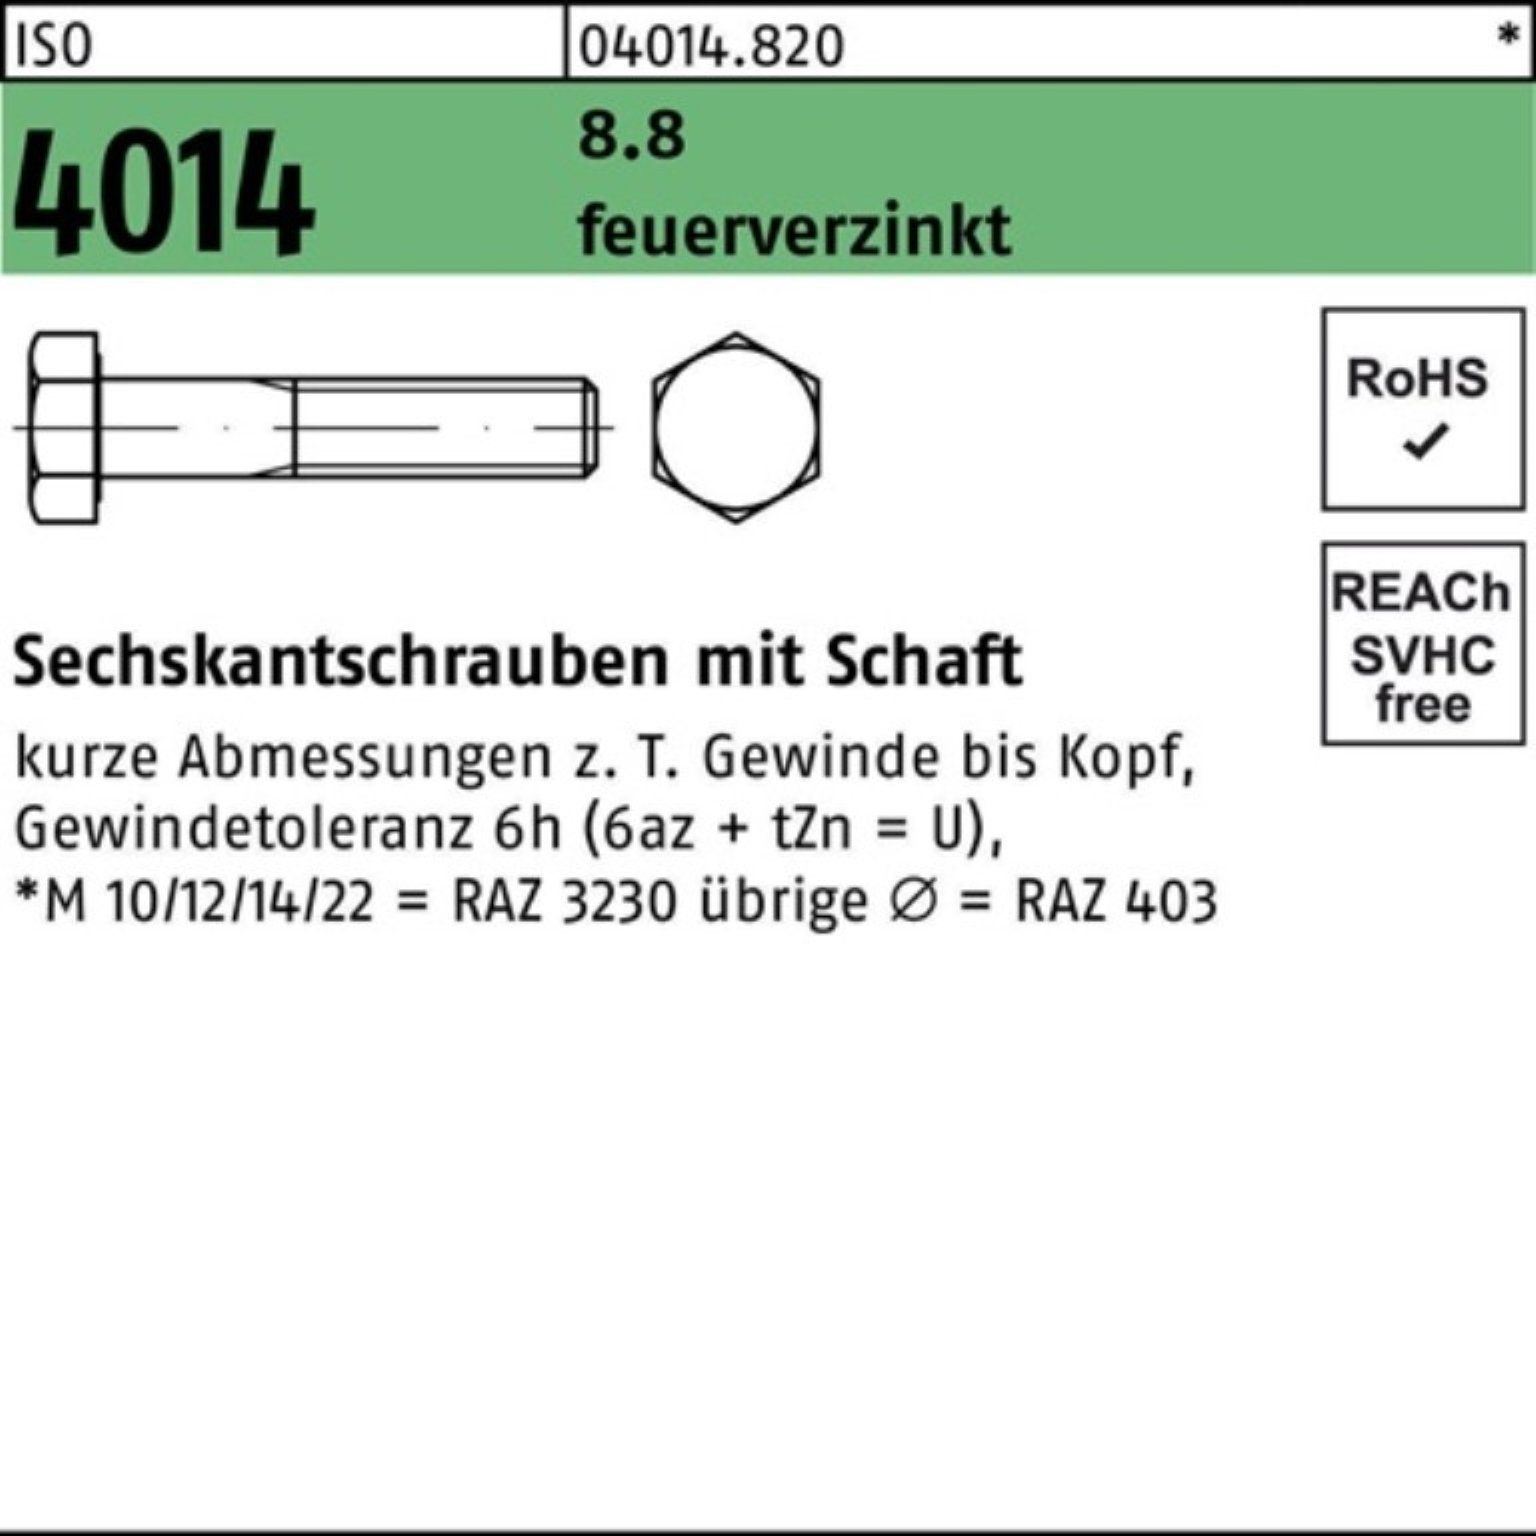 Bufab Sechskantschraube 100er Pack Sechskantschraube ISO 4014 Schaft M24x 95 8.8 feuerverz. 10